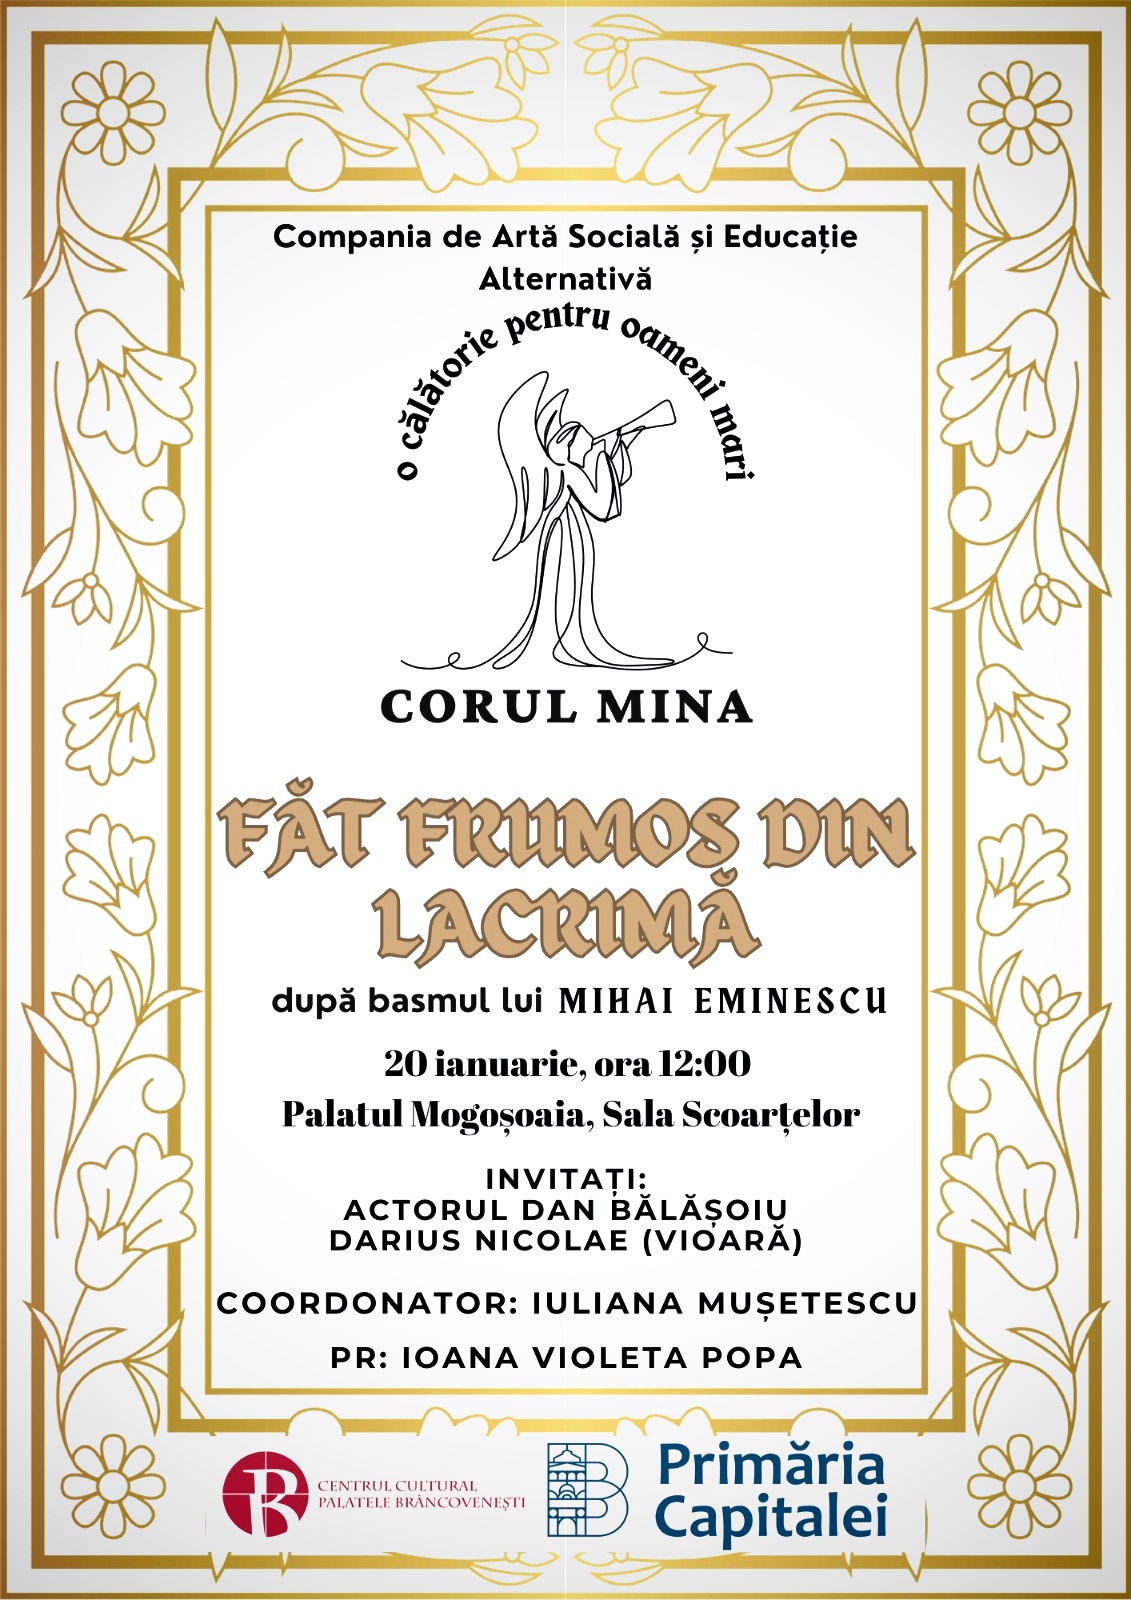 COMUNICAT DE PRESĂ – spectacolul Făt Frumos din Lacrimă, după Mihai Eminescu și afișul evenimentului